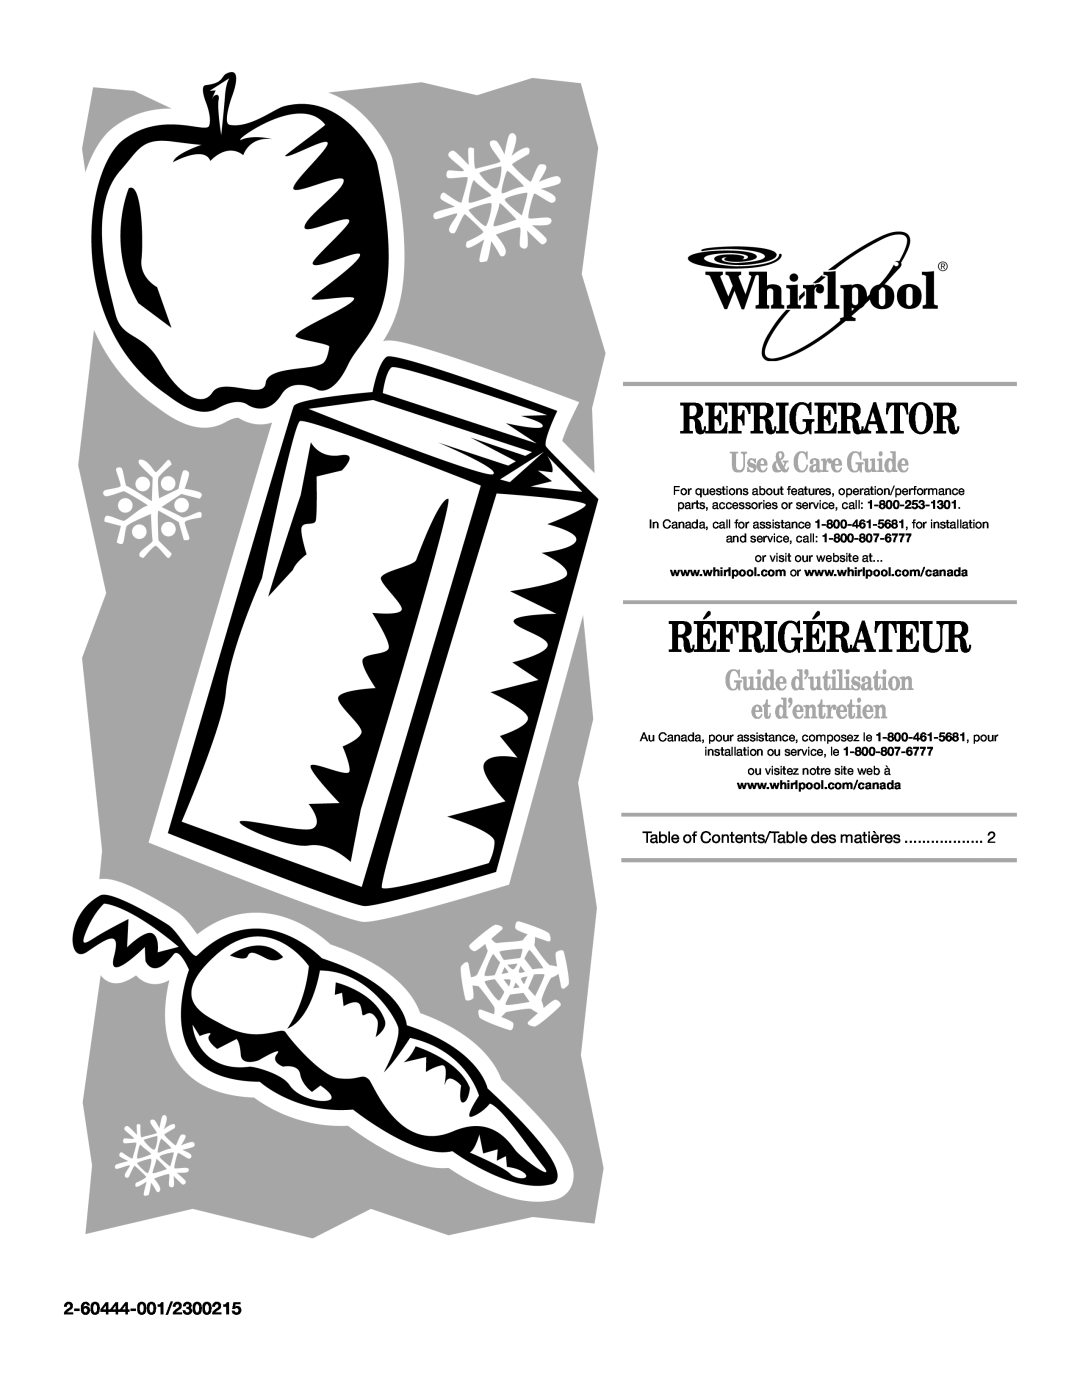 Whirlpool EL7ATRRMQ00 manual Refrigerator, Réfrigérateur, Use & Care Guide, Guide d’utilisation et d’entretien 